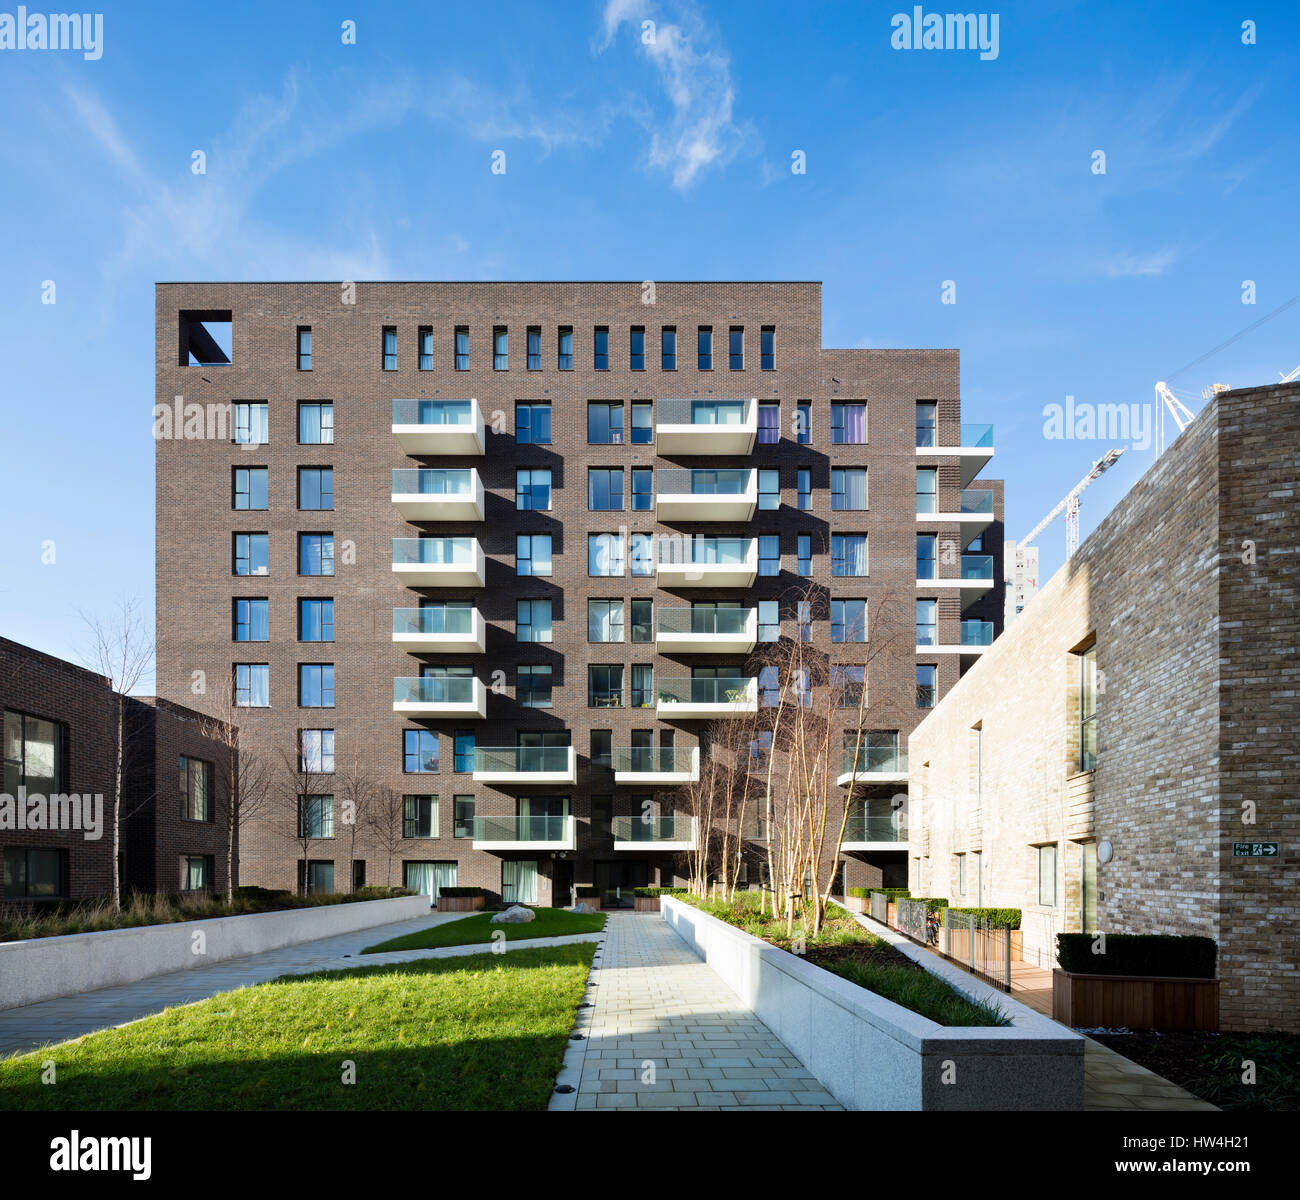 Vista esterna di un edificio della penisola di Greenwich e allo sviluppo del programma di rigenerazione, Londra, Regno Unito. Foto Stock